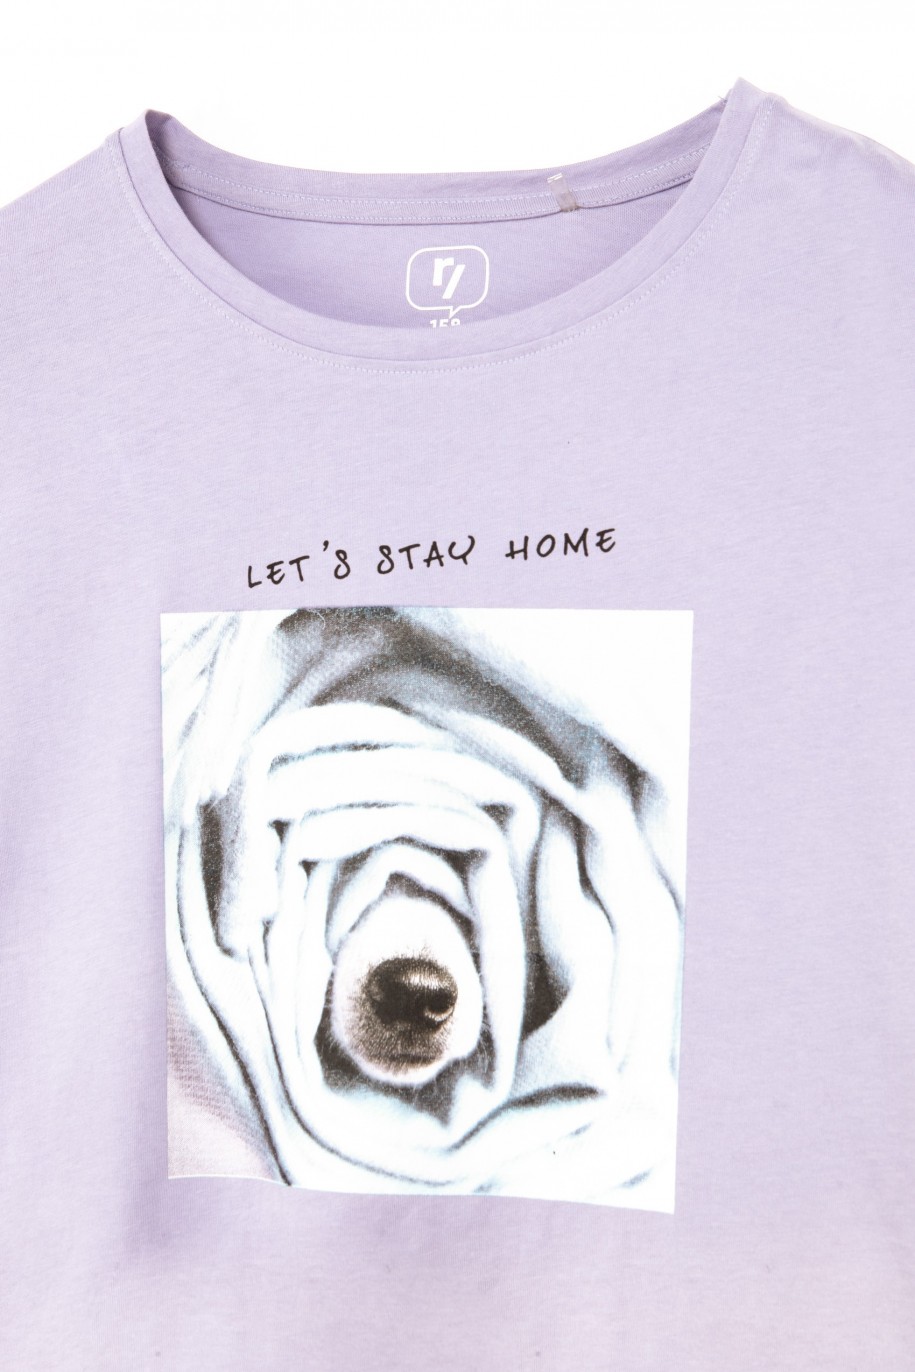 Fioletowy t-shirt dla dziewczyny ROSE - 31555